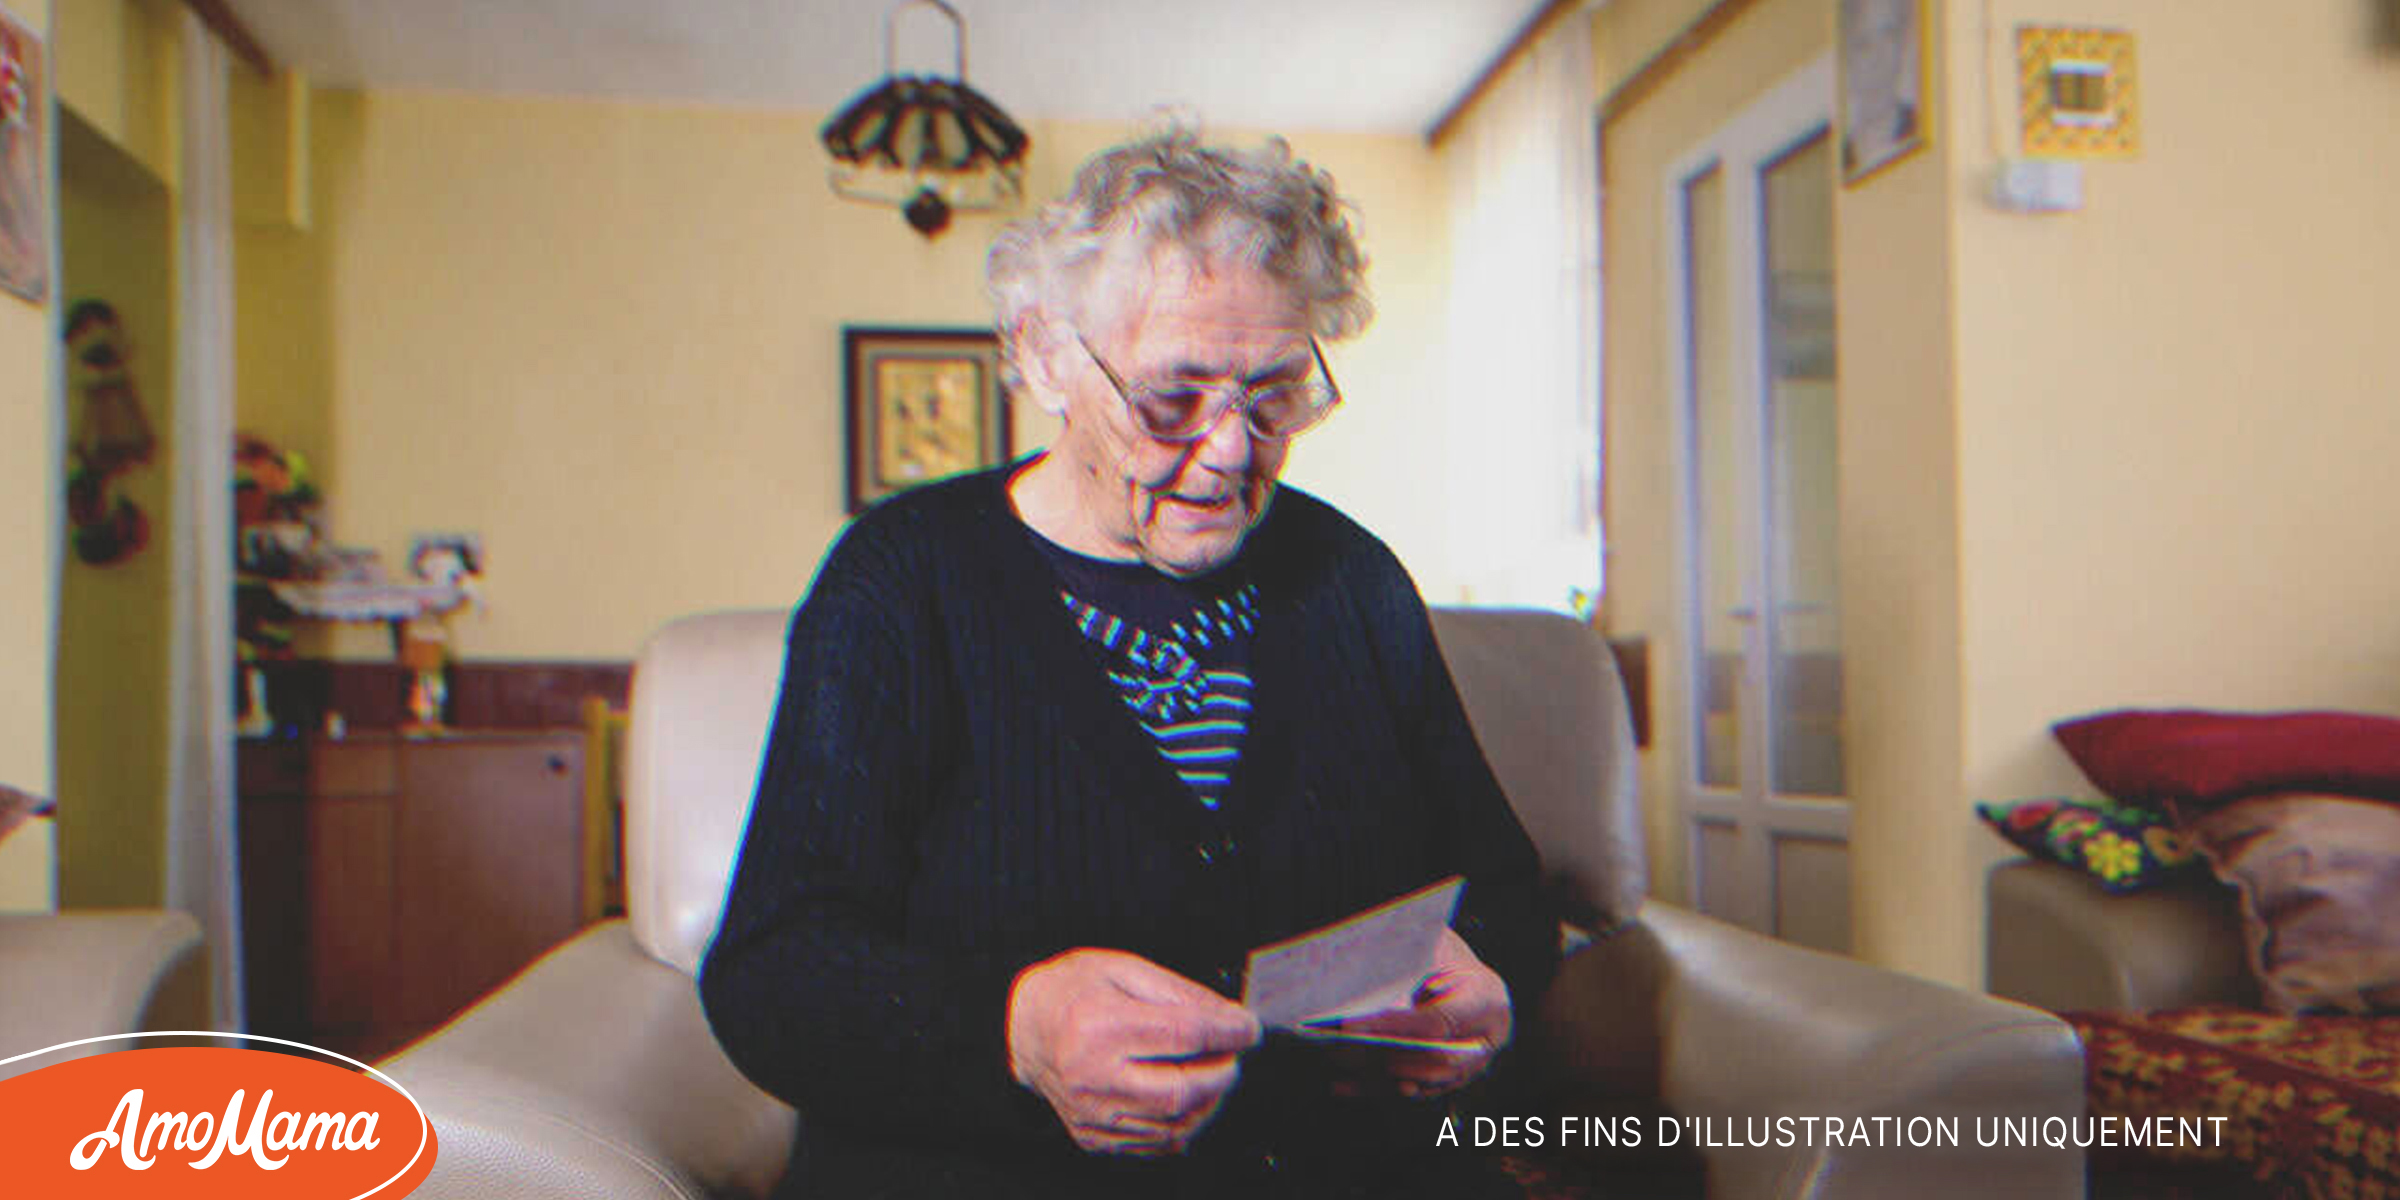 Une femme âgée seule dans une maison de retraite reçoit une lettre d’un homme qui prétend être son fils – Histoire du jour